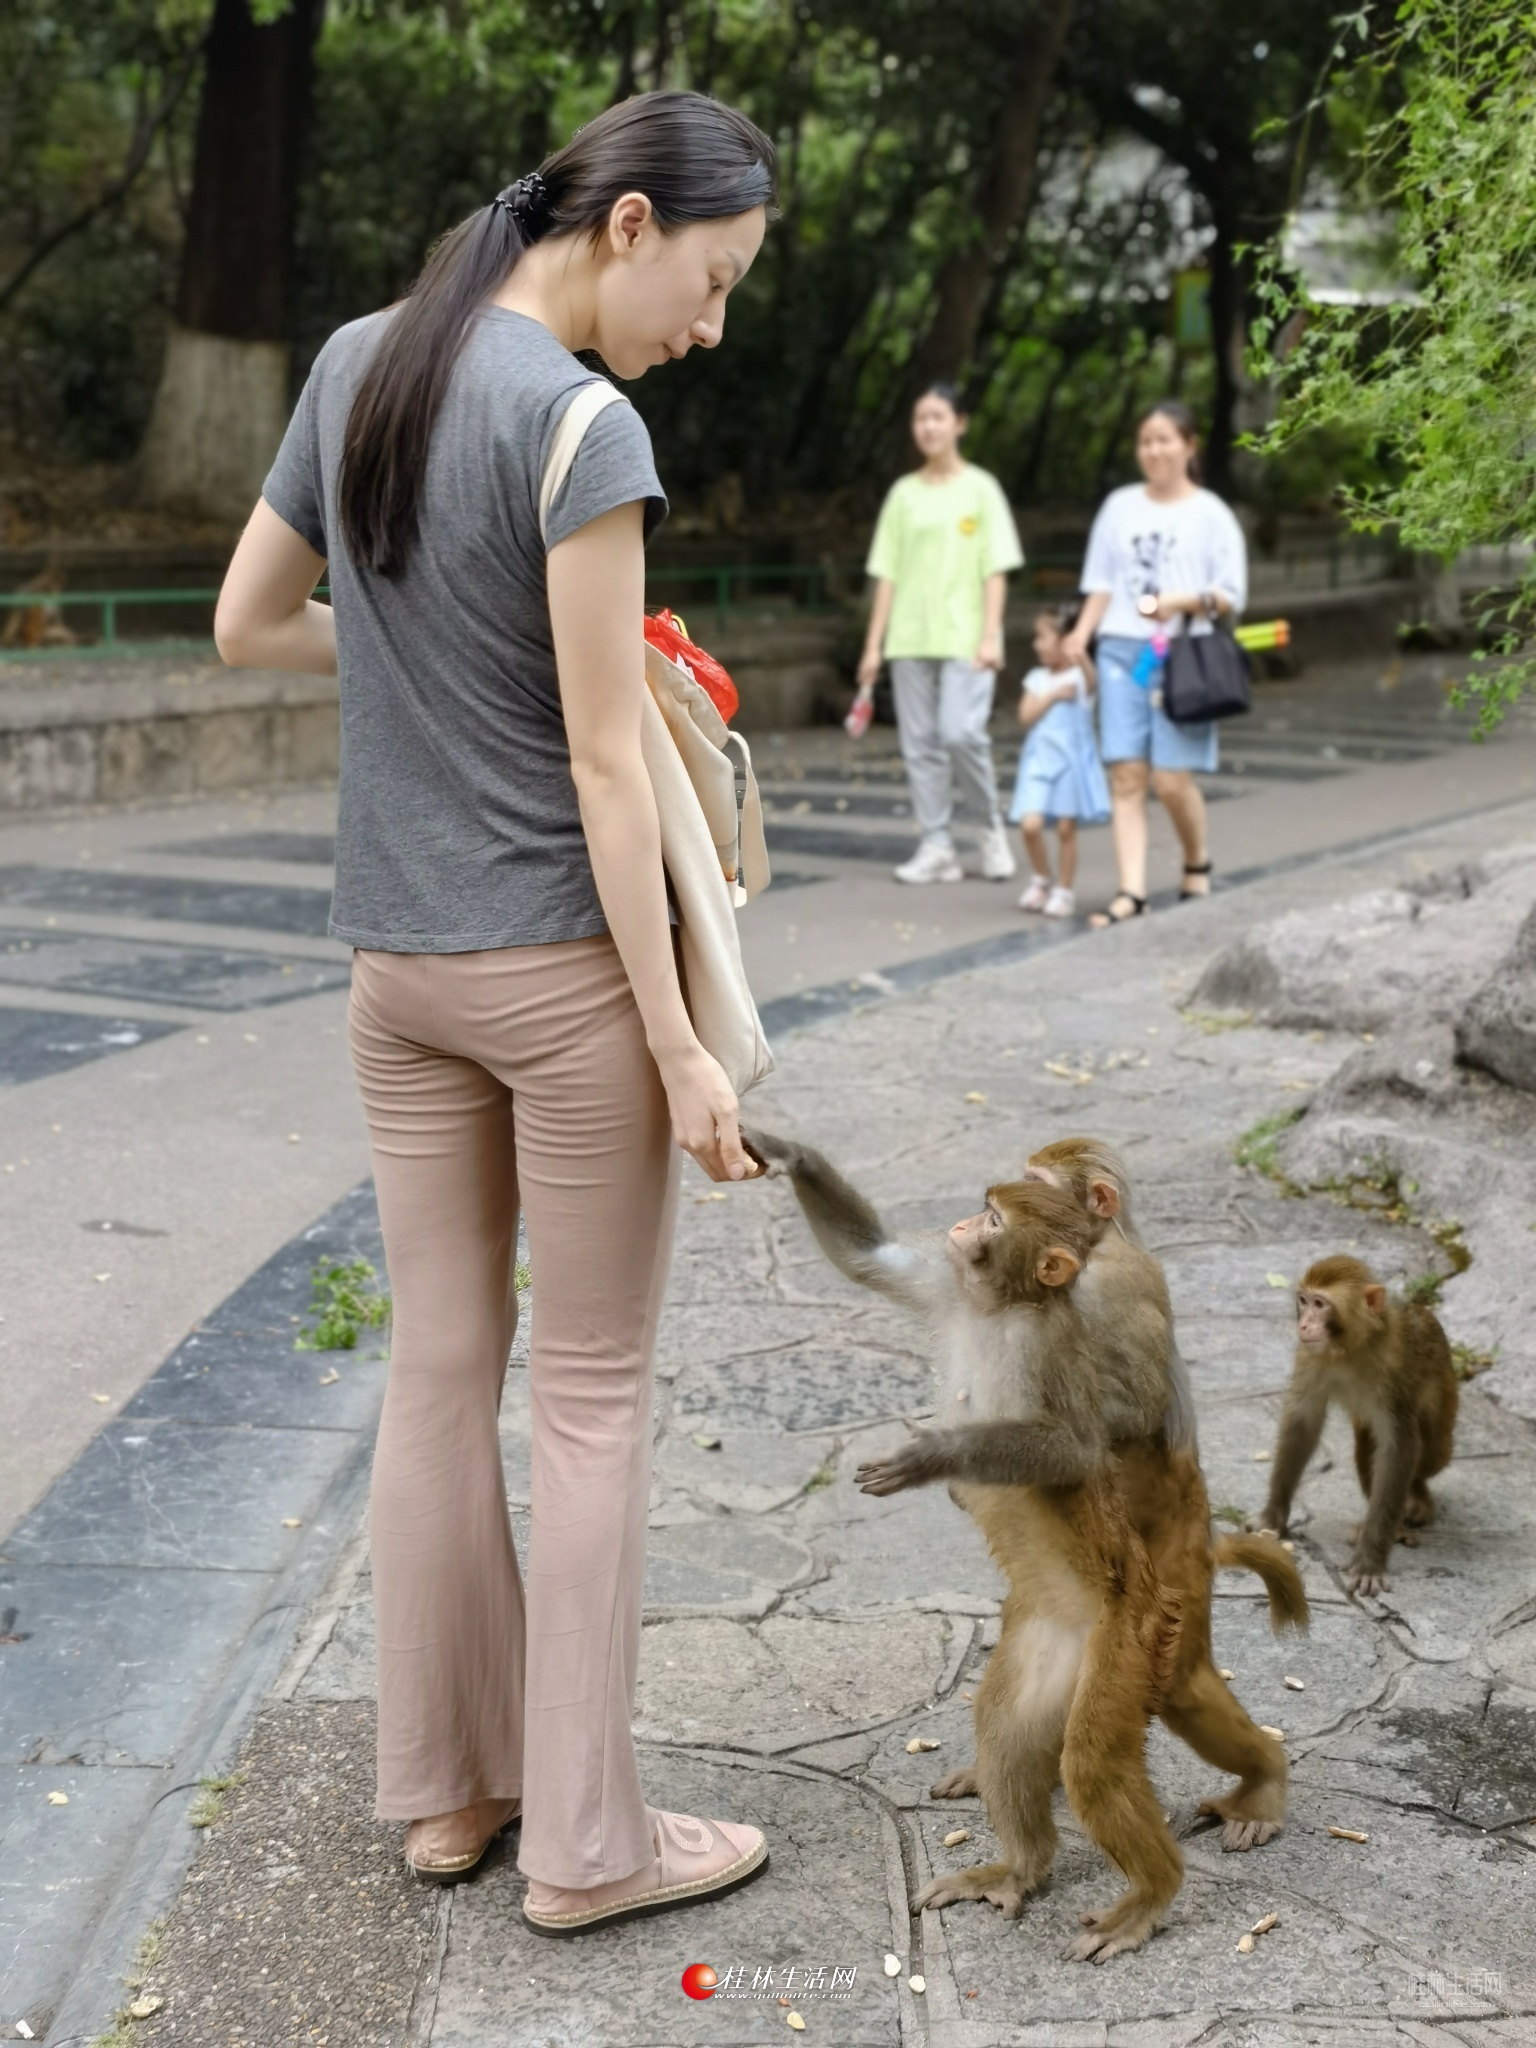 七星公园的猴子好多,小姐姐有心了!